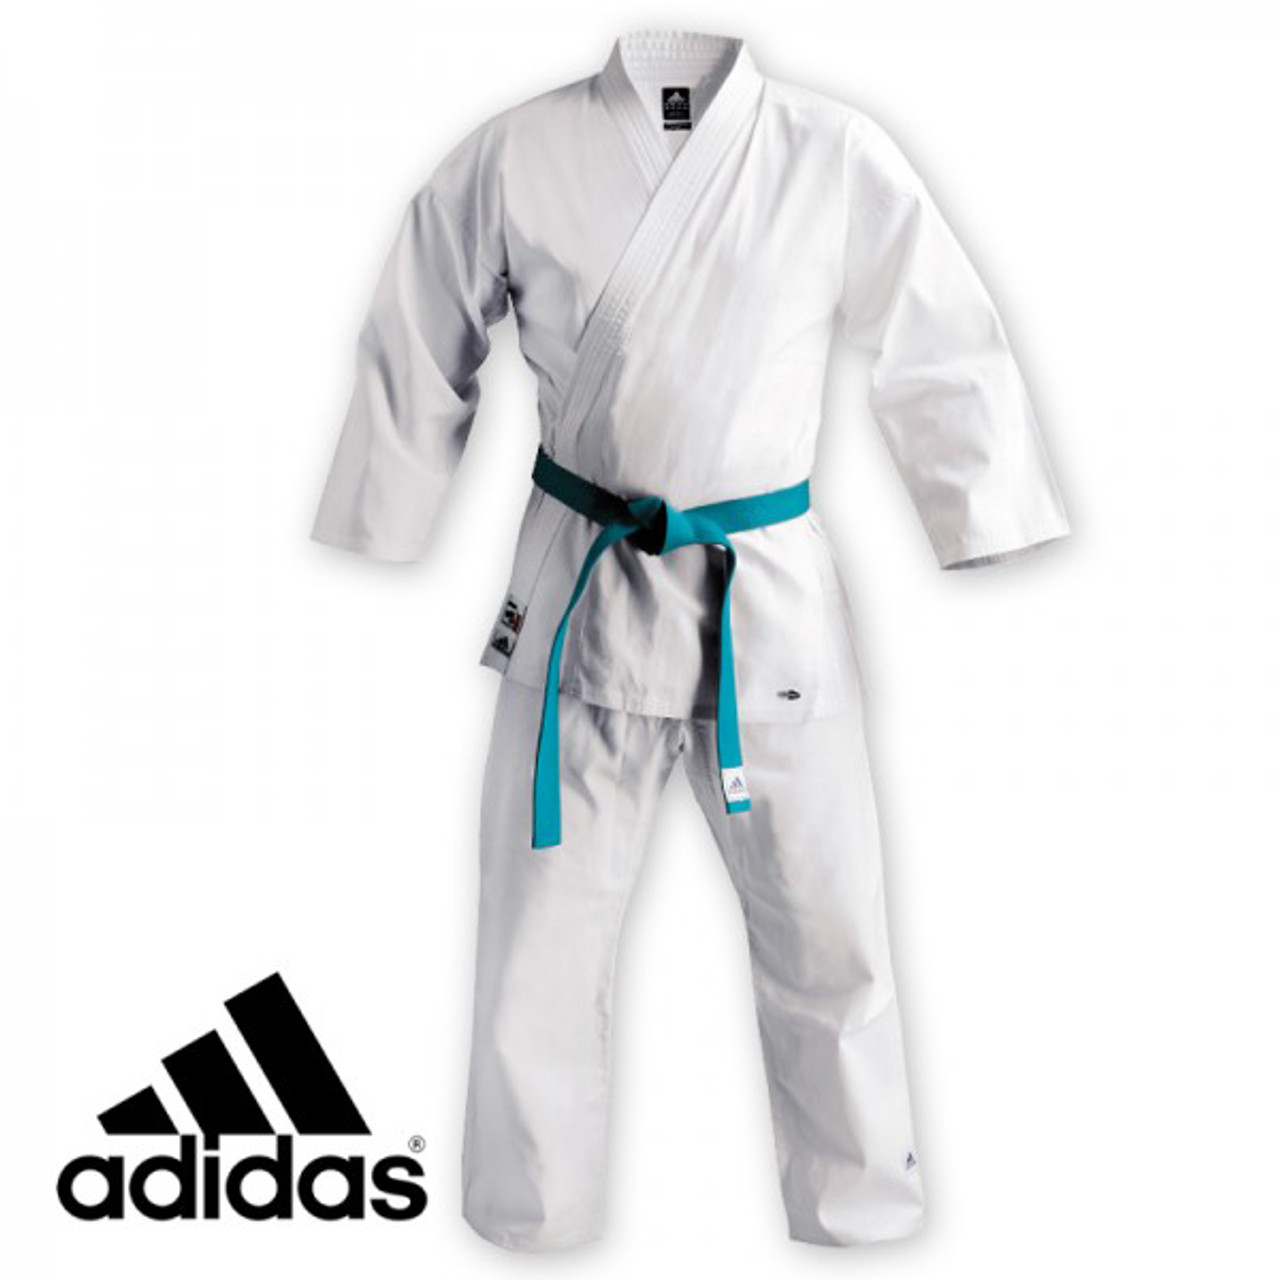 adidas karate kit